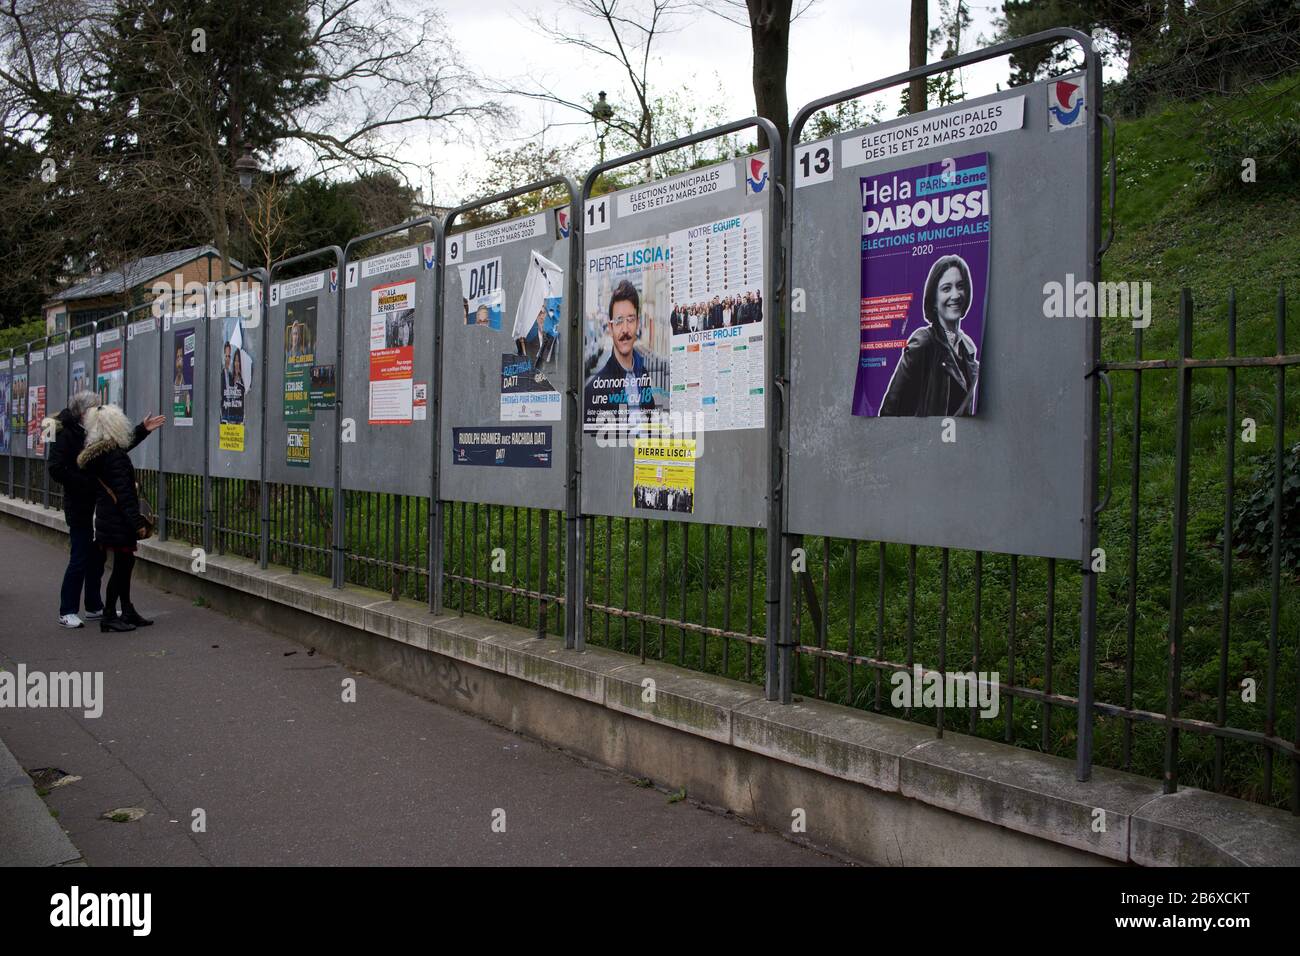 París se prepara para las elecciones locales francesas en medio de temores coronavirus, rue Ronsard, 75018 París, Francia - Marzo 2020 Foto de stock